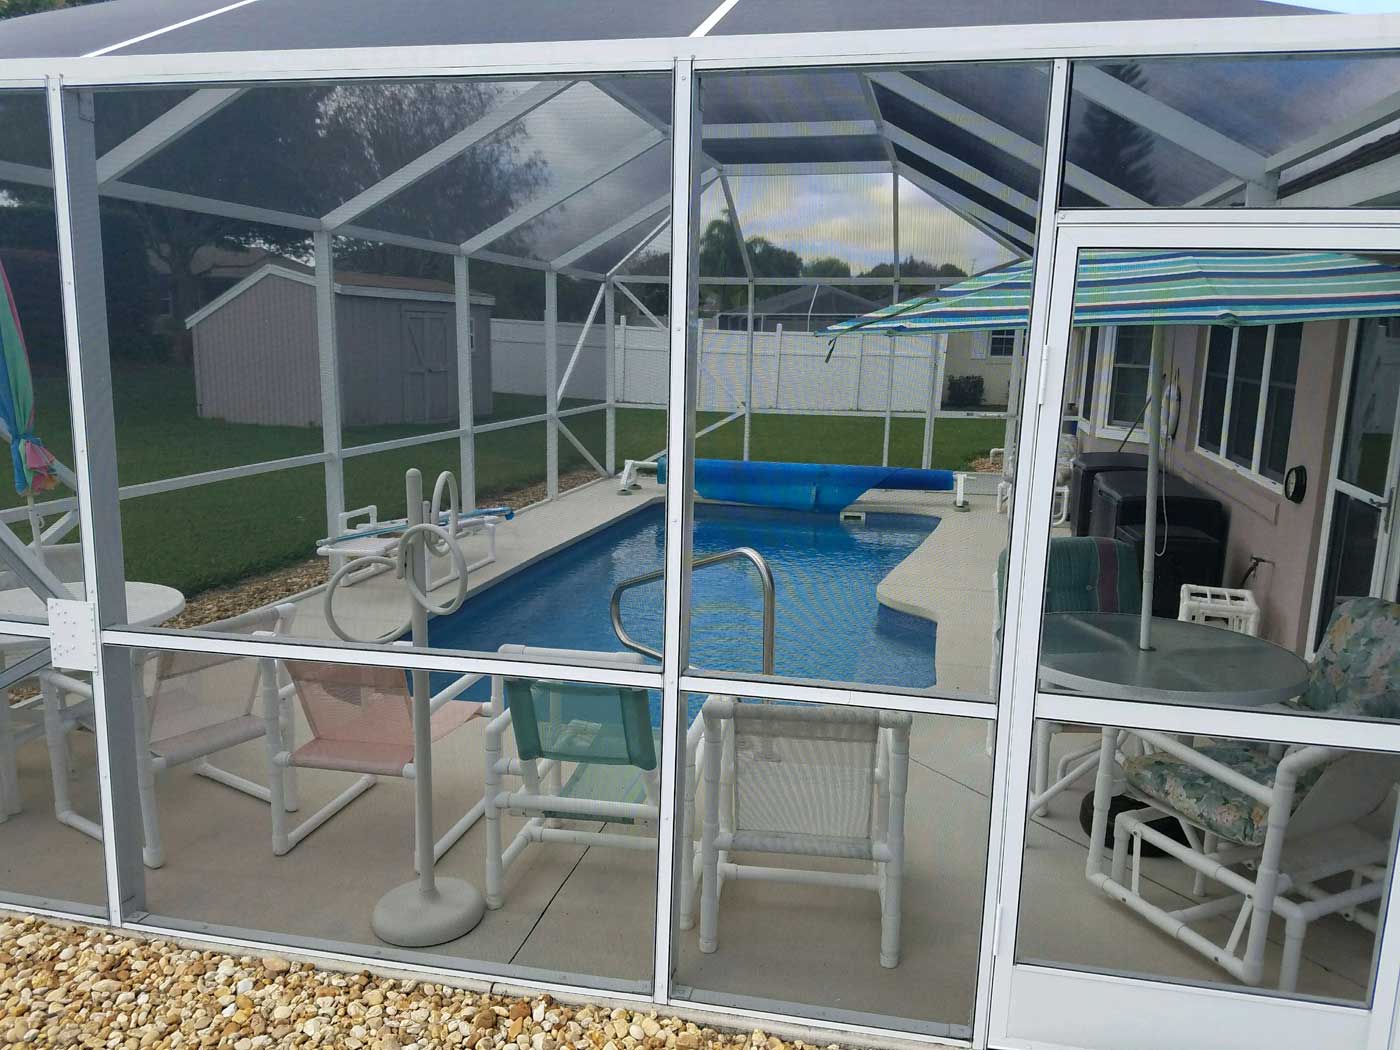 Completed pool by Refreshing Pools & Spas, INTL, LLC